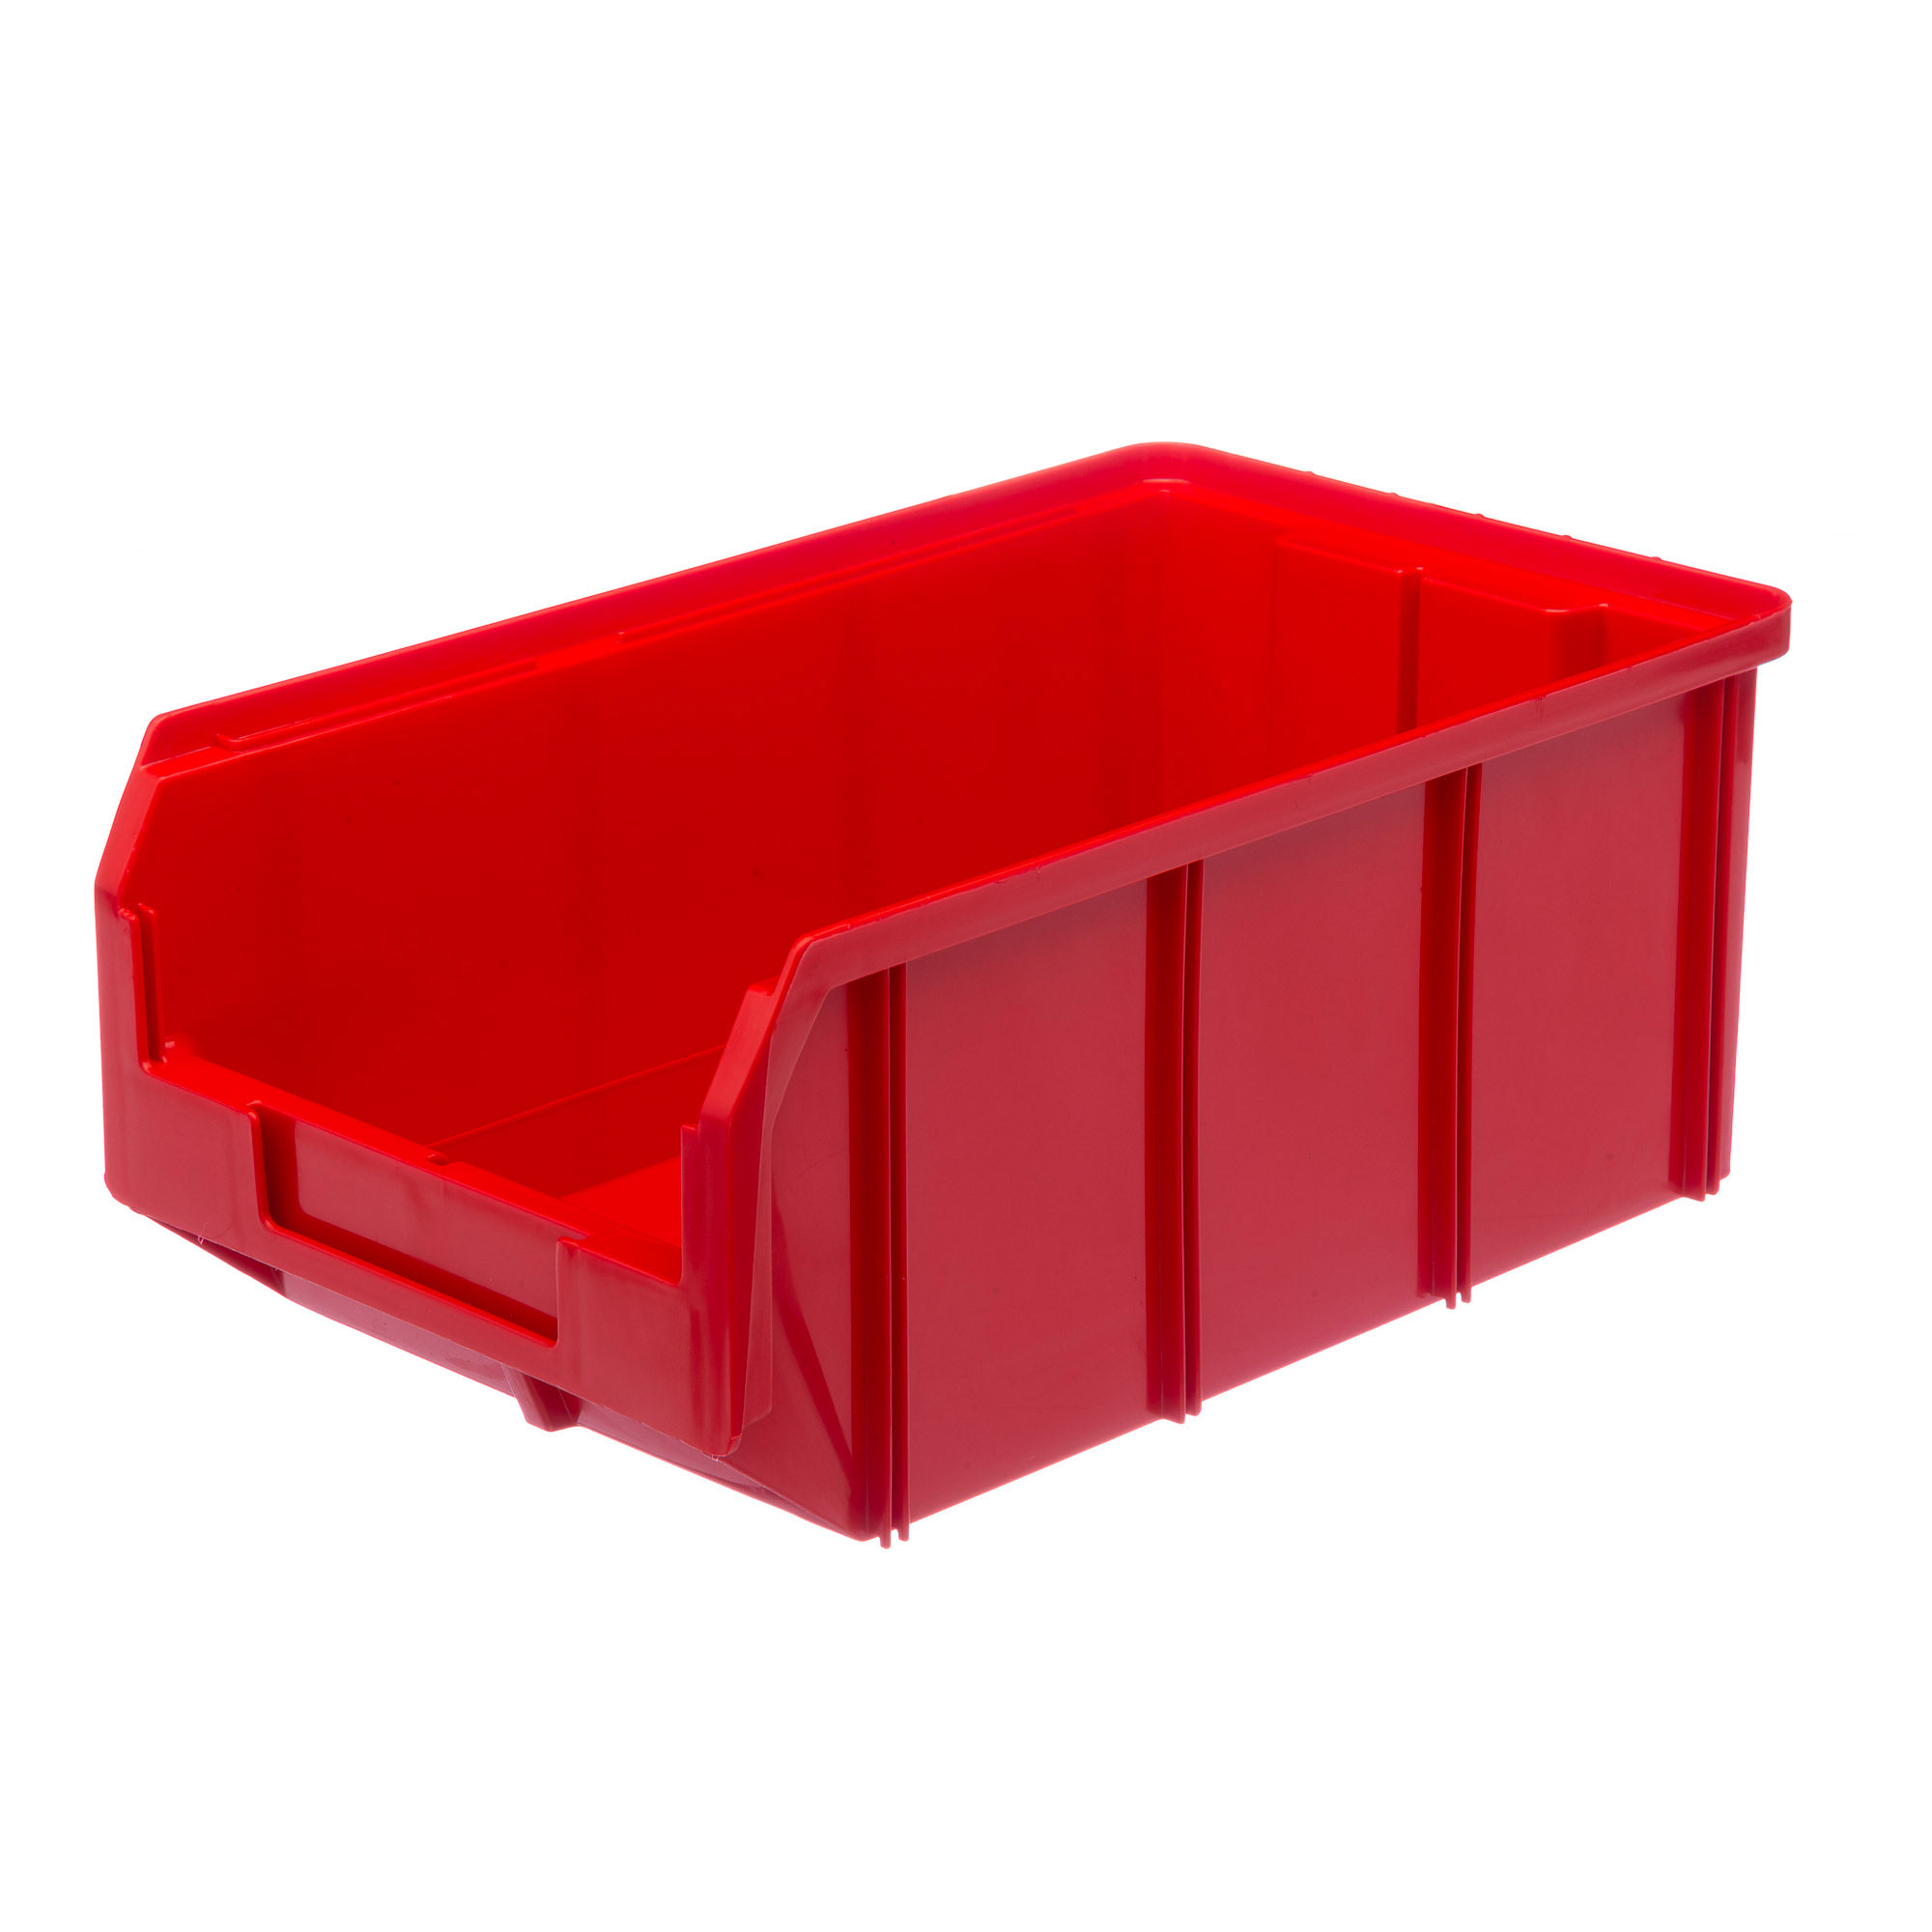 Пластиковый ящик Стелла-техник V-3-красный 342х207x143мм, 9,4 литра пластиковый лоток водоотводный gidrolica